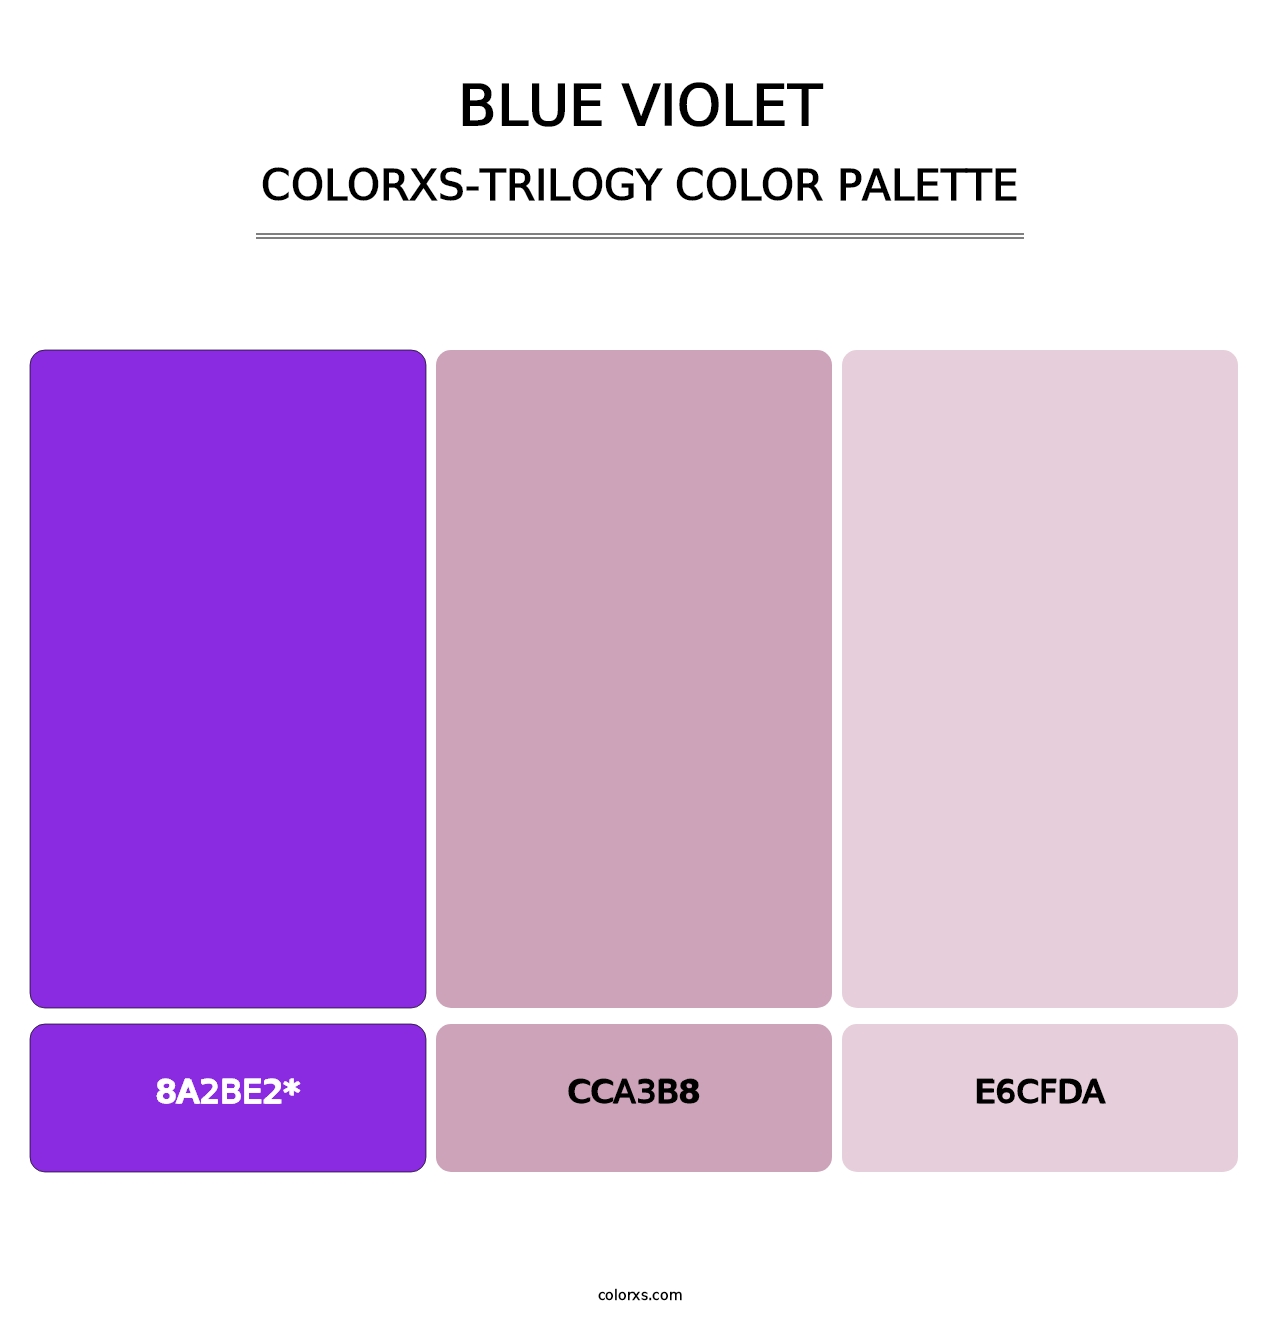 Blue Violet - Colorxs Trilogy Palette